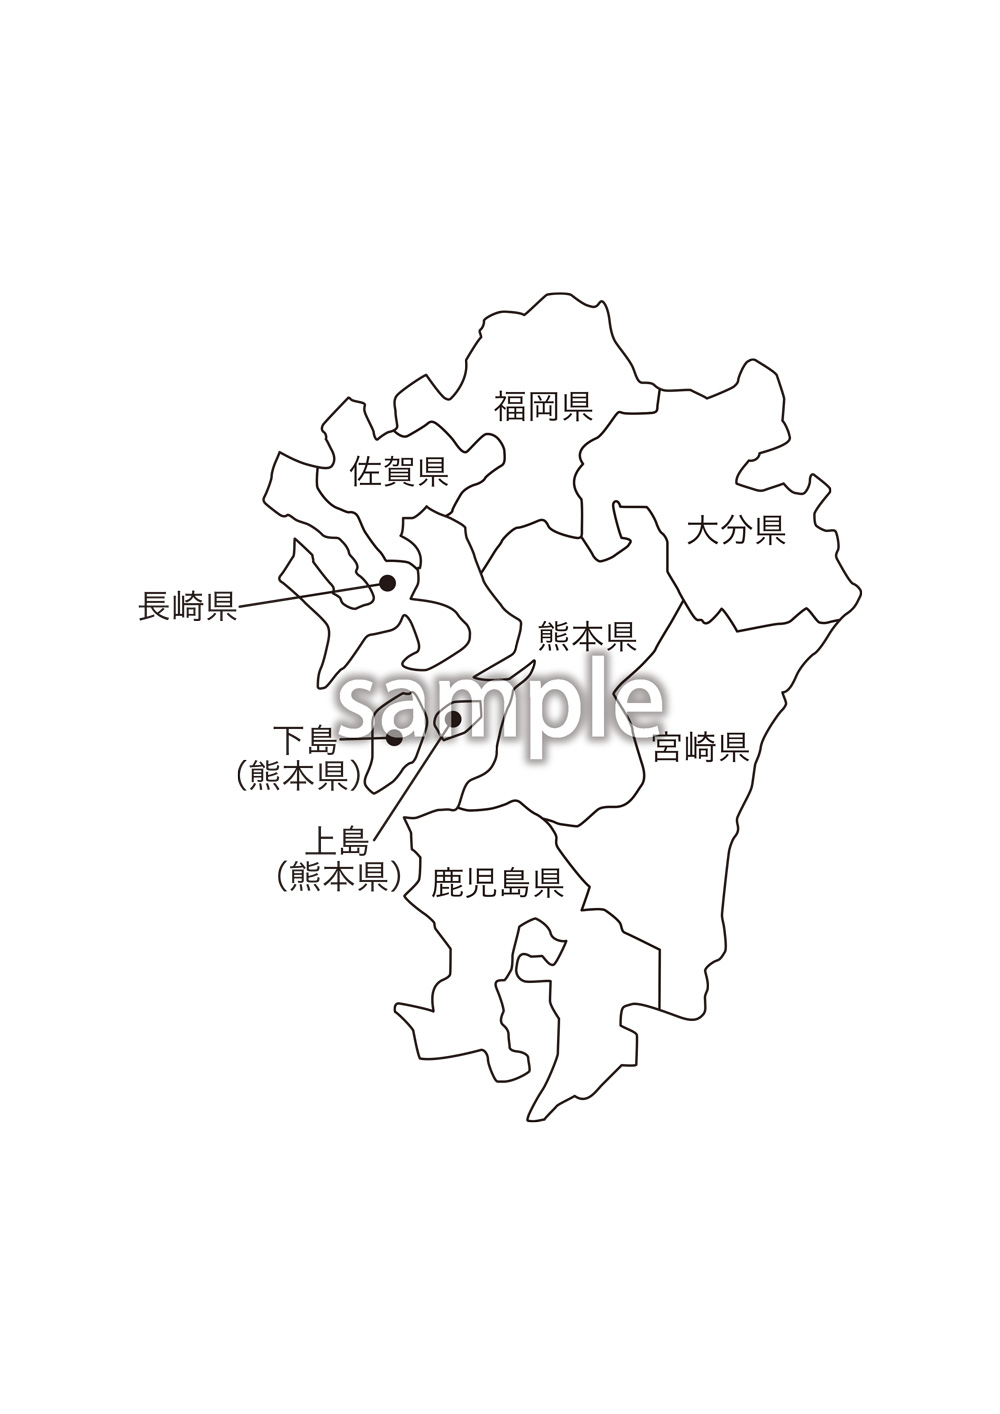 九州地方都道府県名入り地図